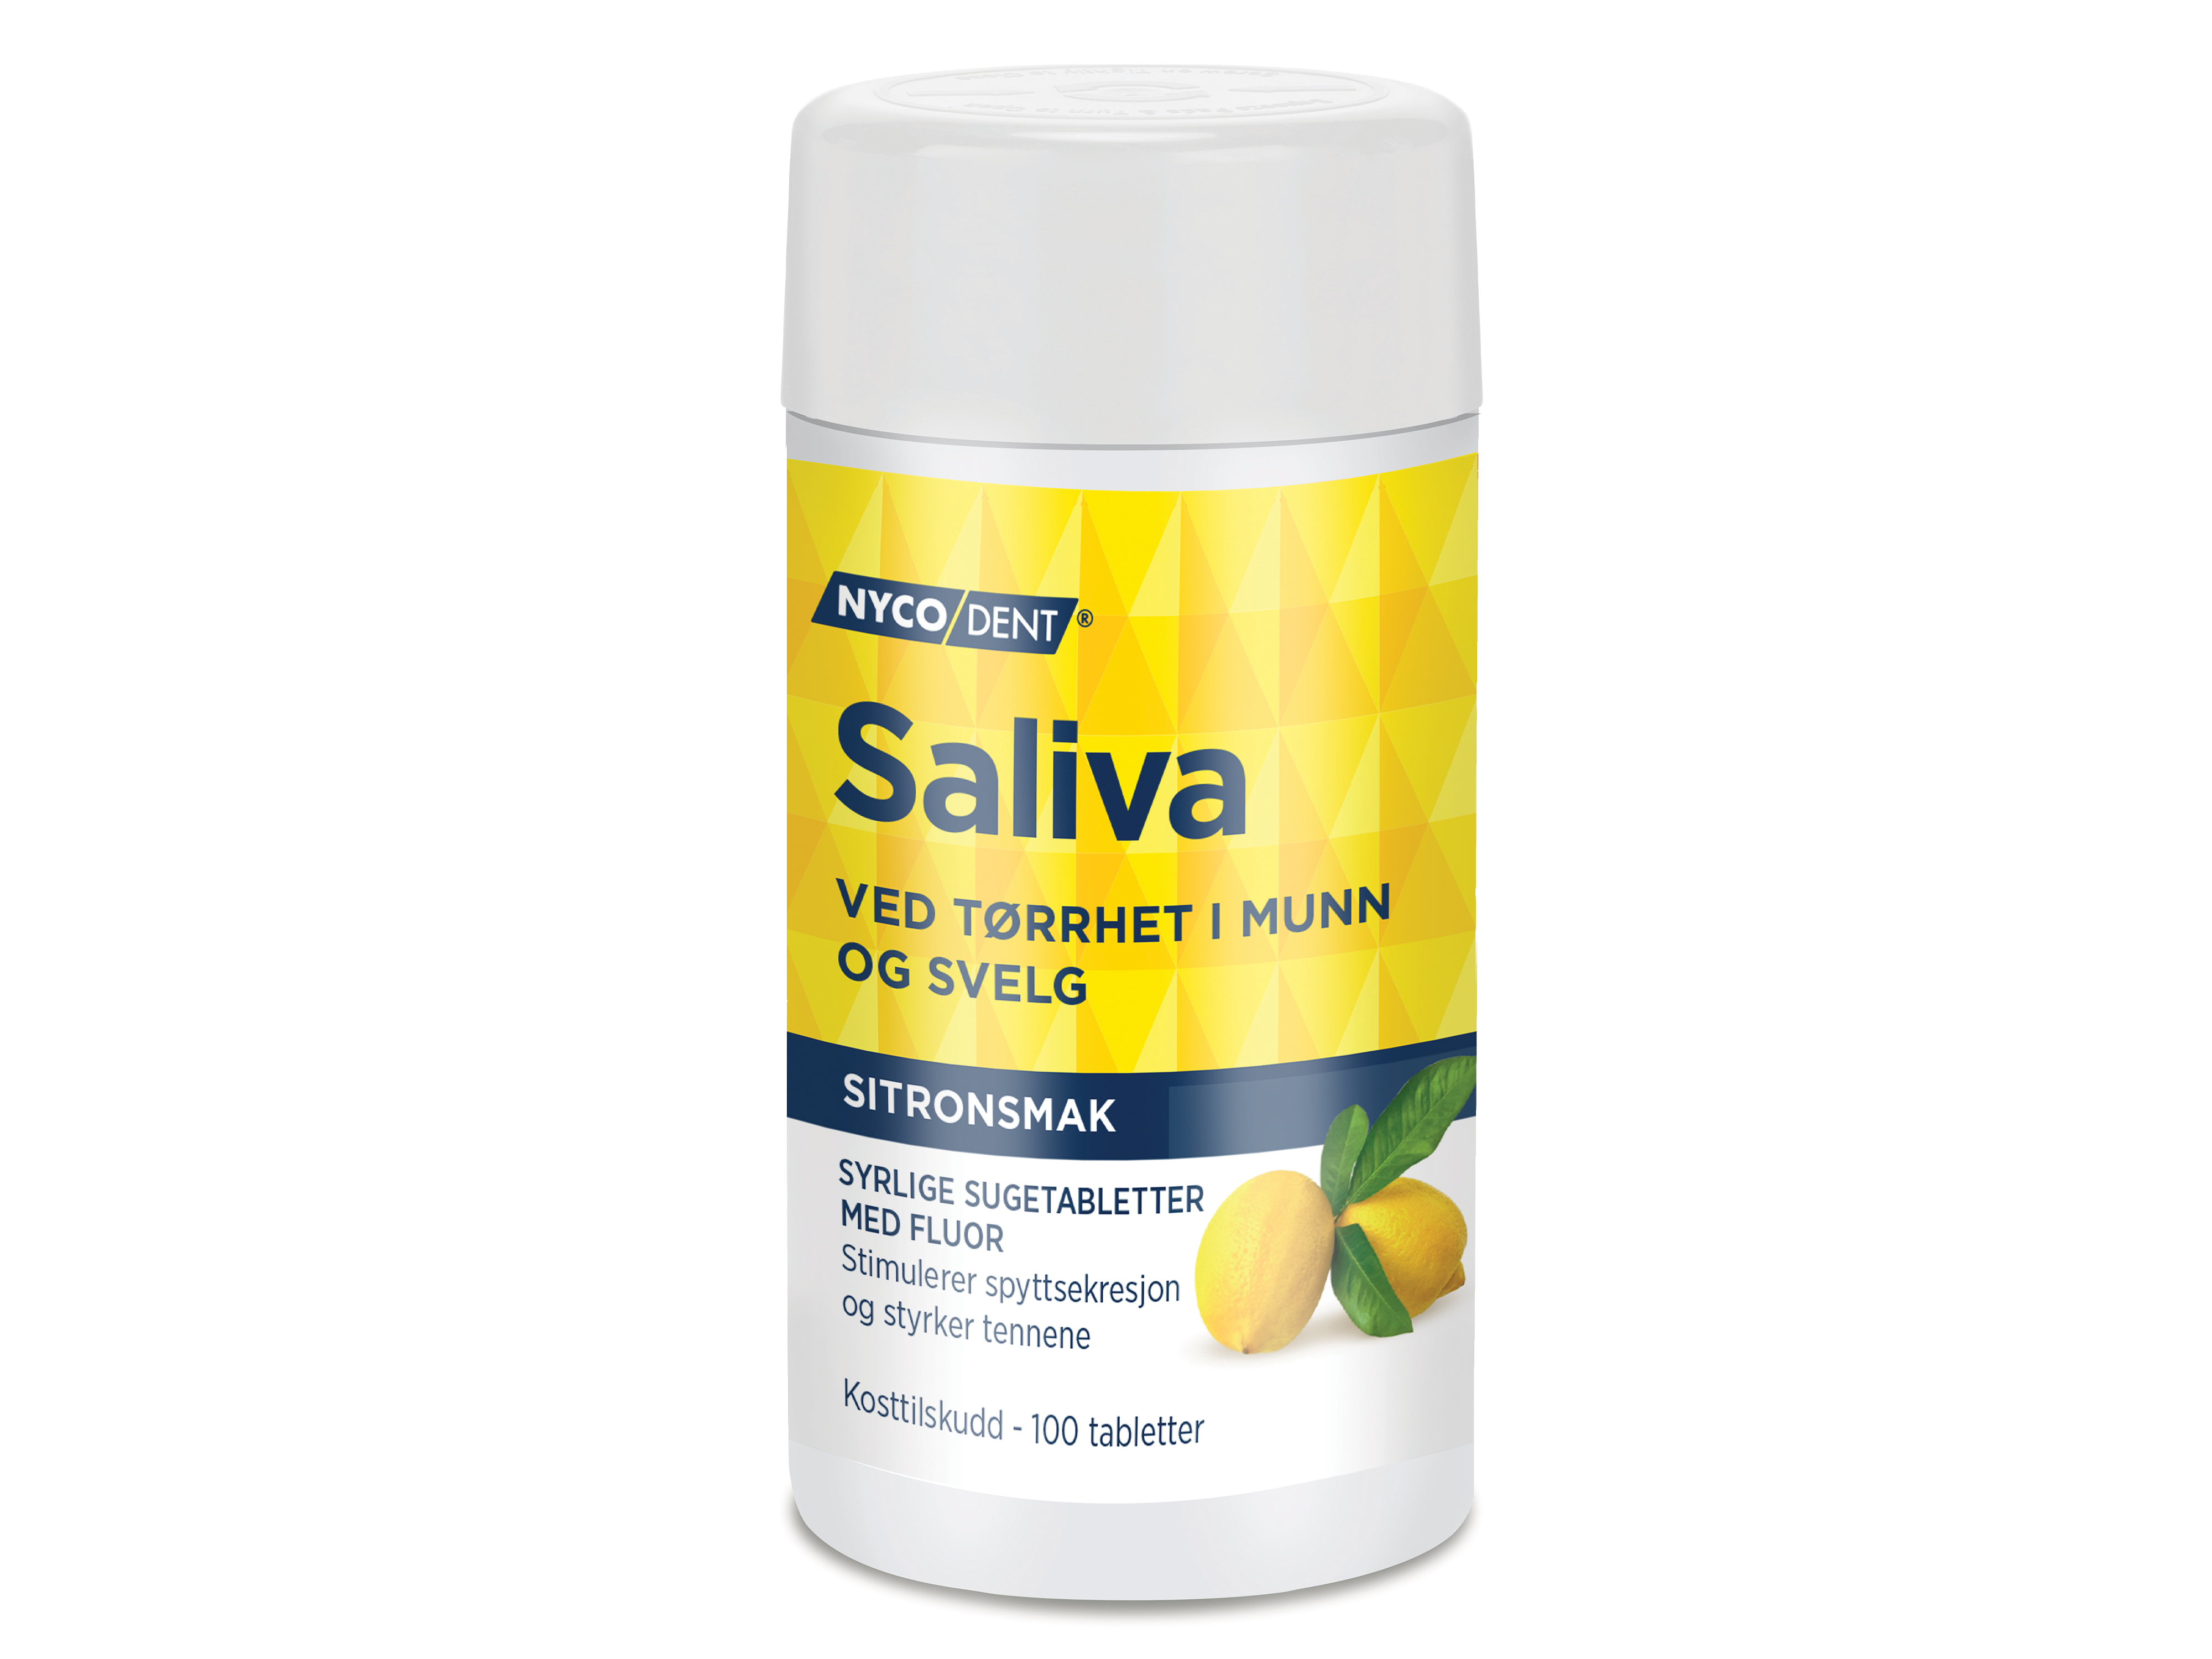 Saliva m/sitron, 100 tabletter